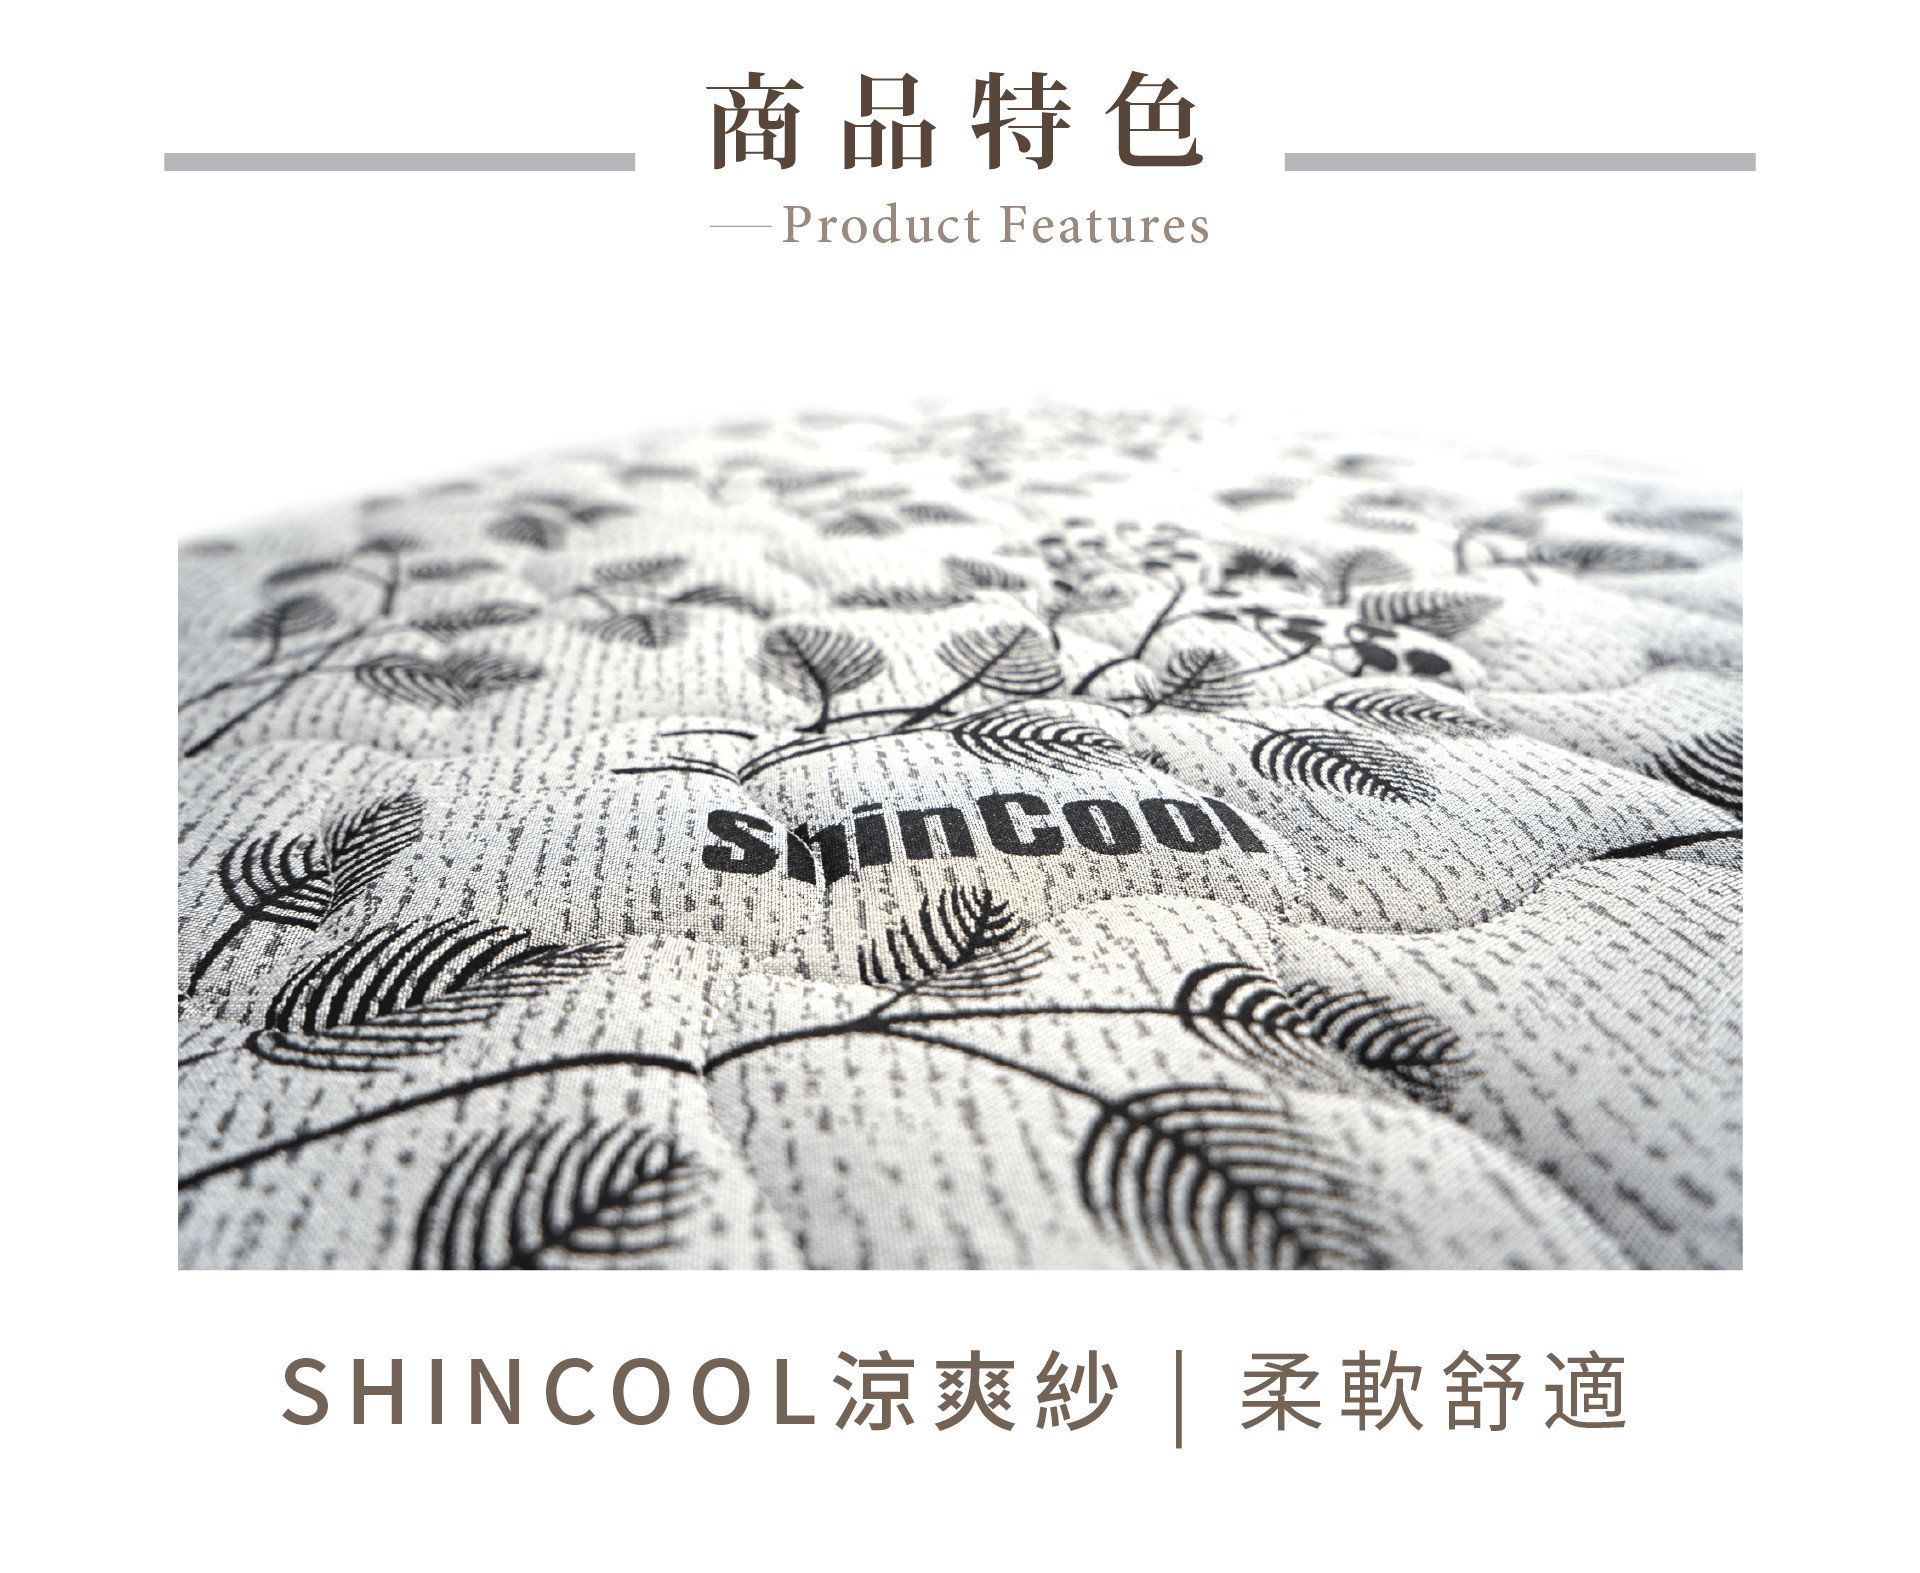 全新蘿菈硬式乳膠獨立筒採用SHINCOOL涼感布料，能有效降低人體溫度，久睡不悶熱